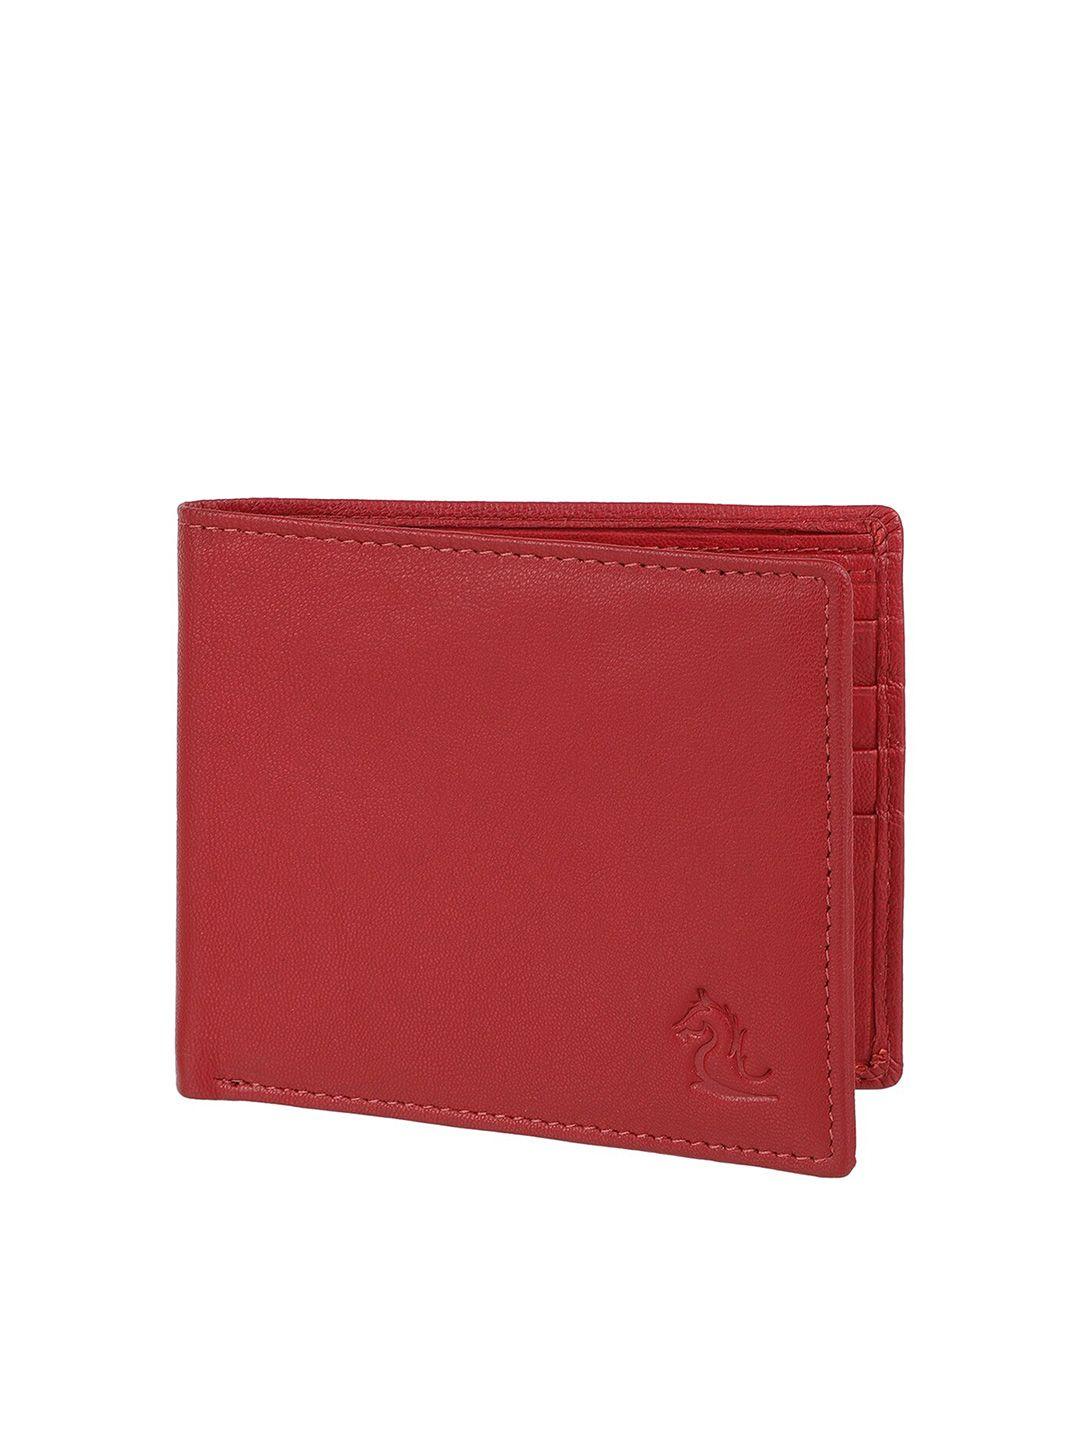 kara men red leather two fold wallet